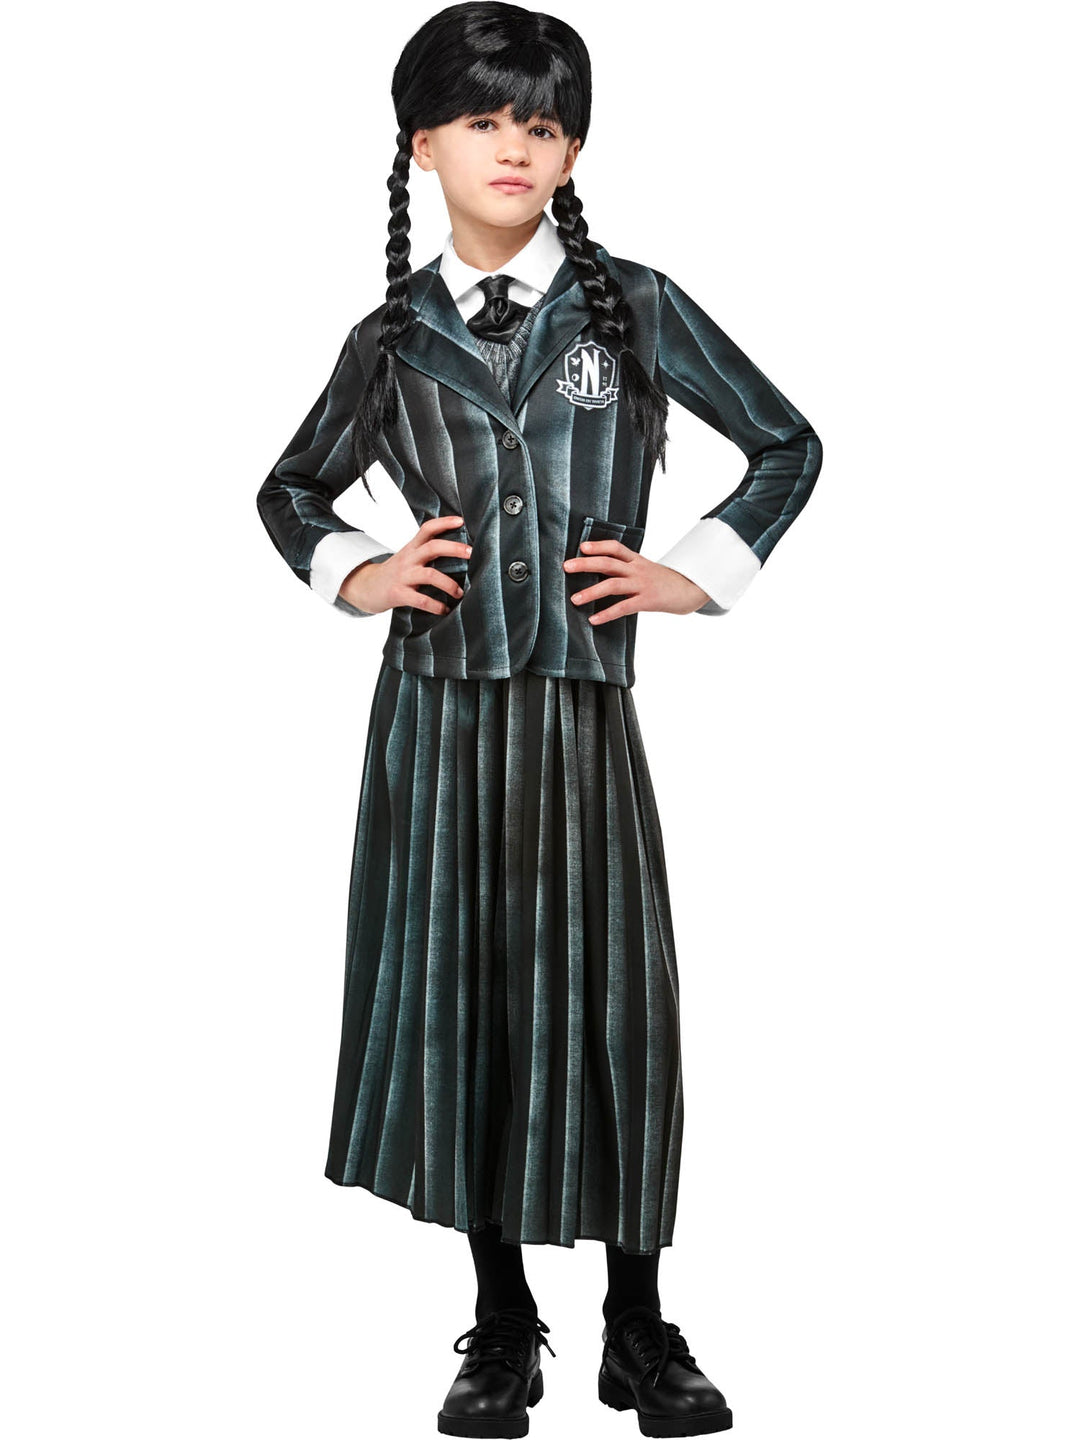 Wednesday Addams Nevermore School Uniform Girls Costume_1